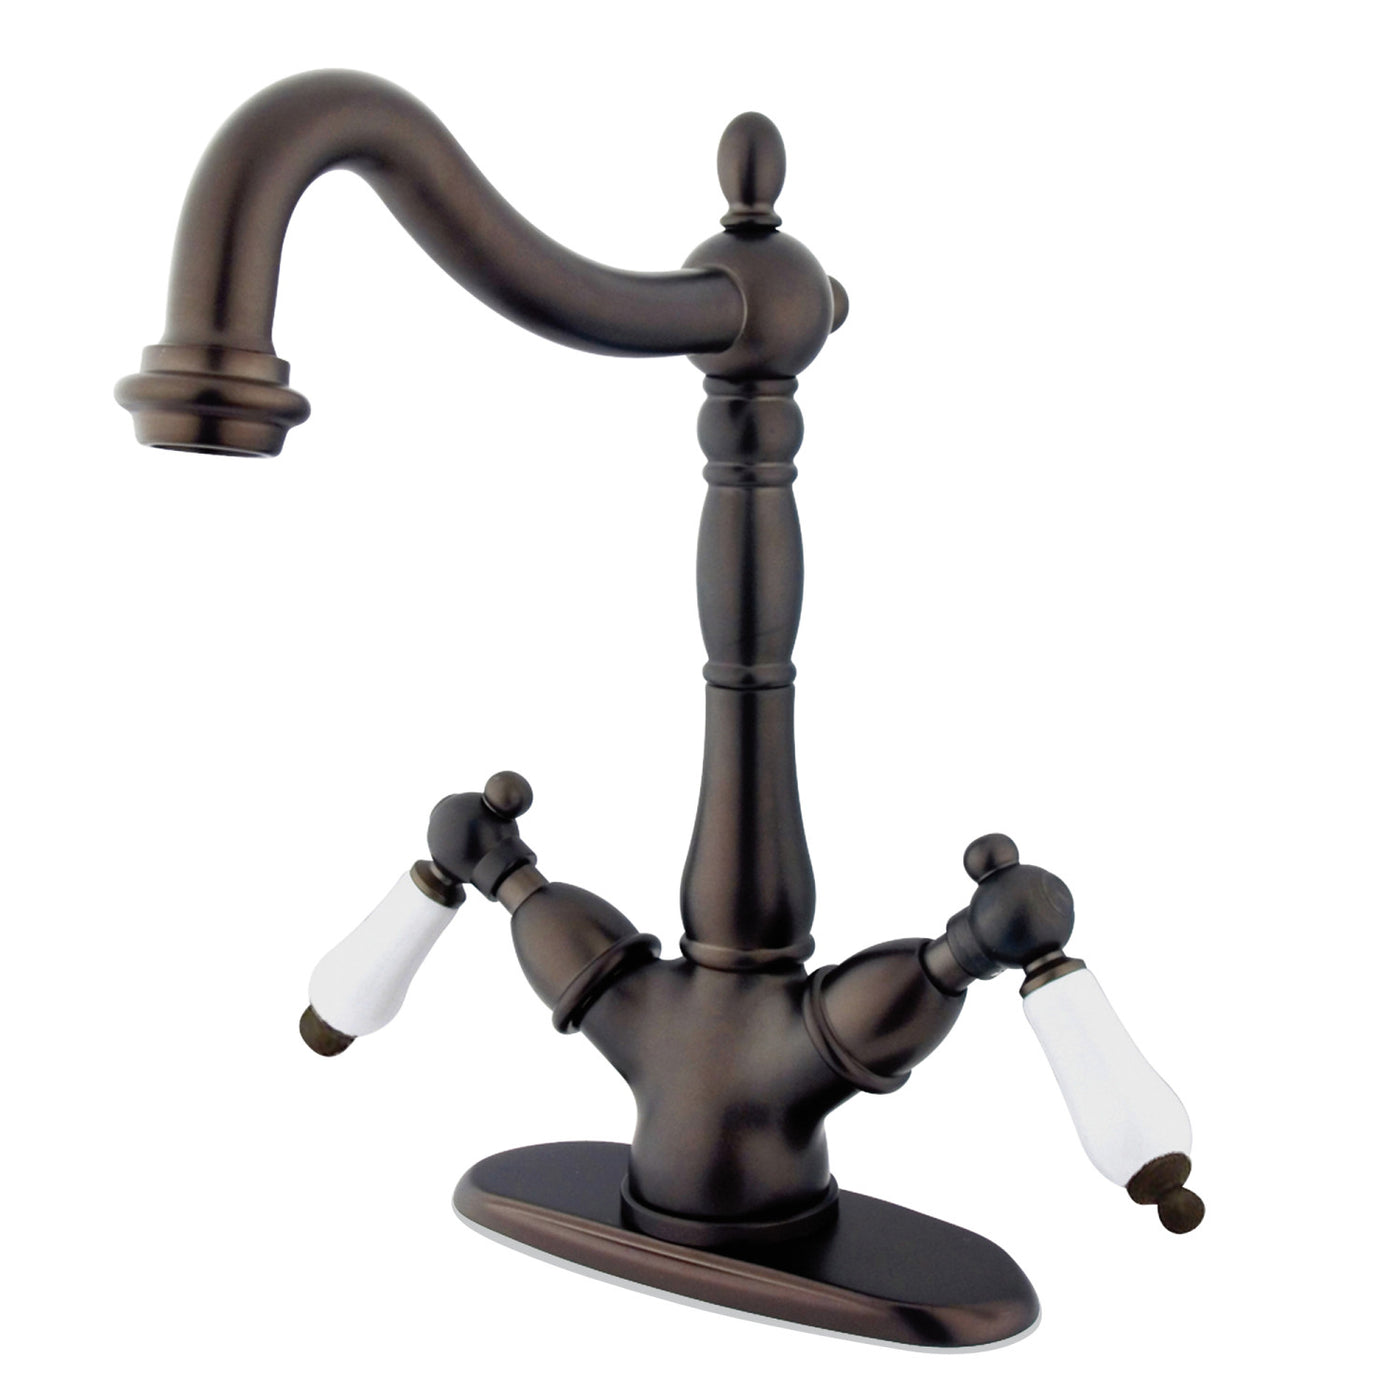 Elements of Design ES1495PL Vessel Sink Faucet, Oil Rubbed Bronze